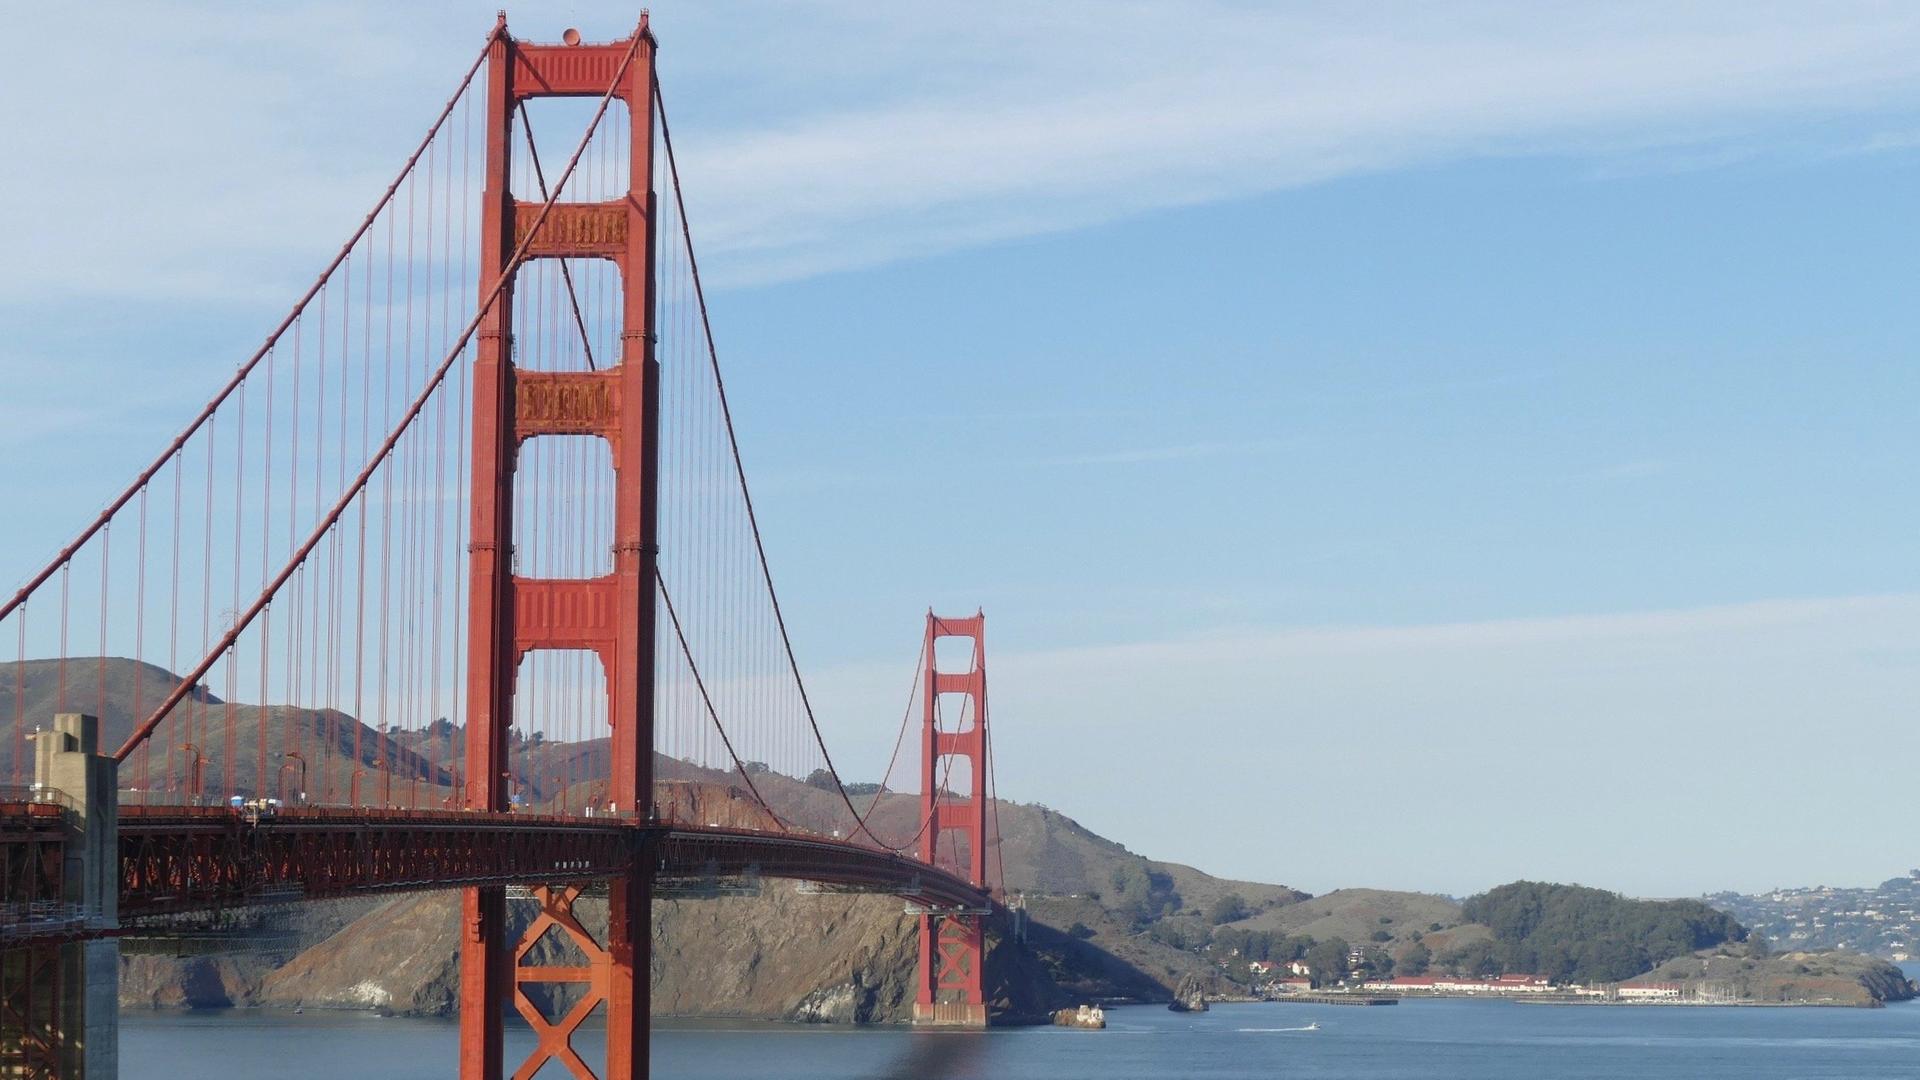 Auf den Bildern ist die Golden Gate Bridge in verschiedenen Stadien ihres Bestehens zu sehen.